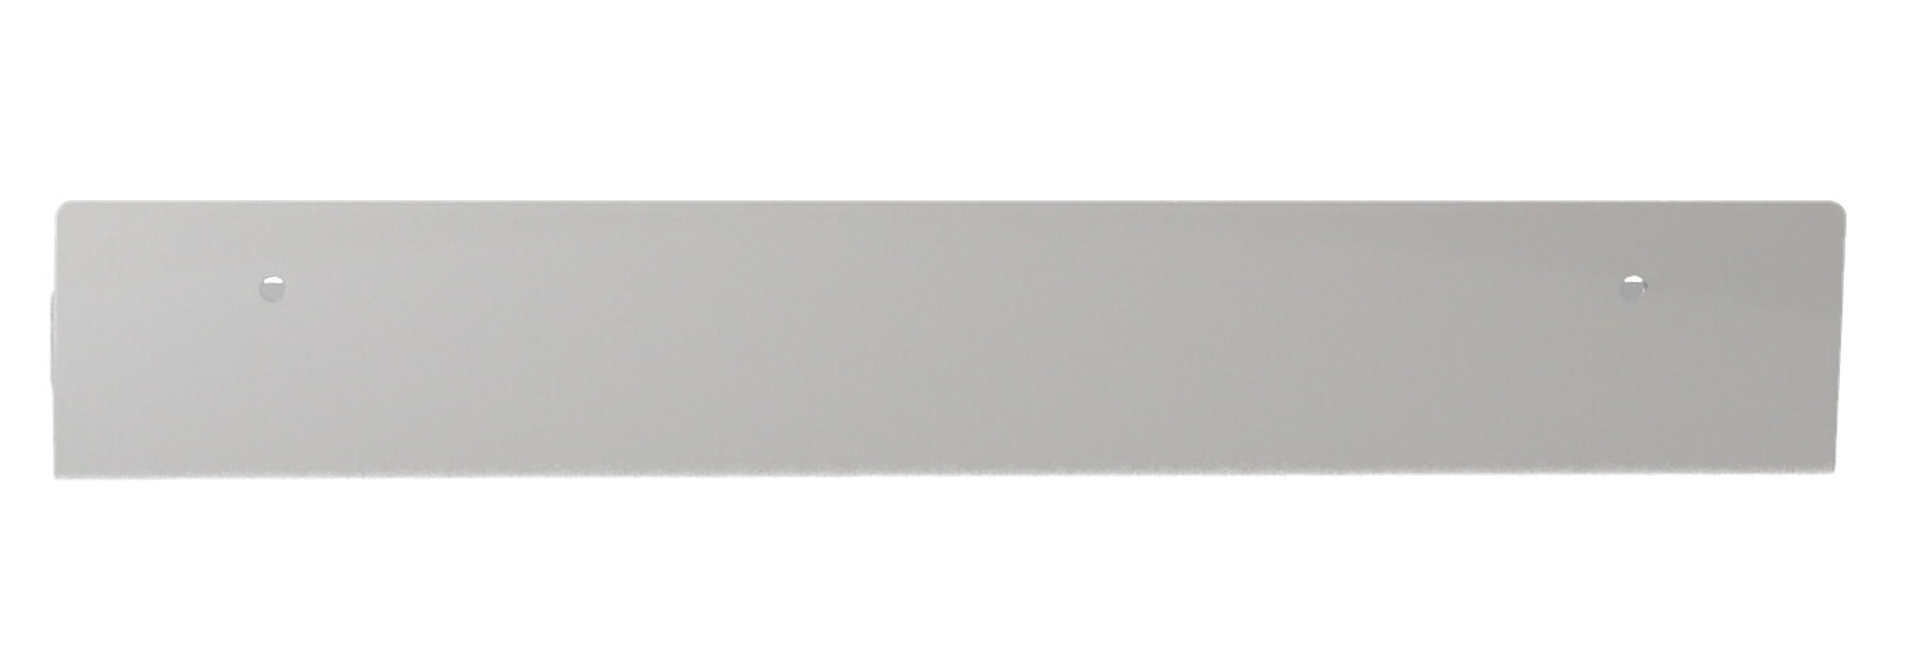 Das Wandregal Jill wurde aus Metall gefertigt und hat einen weißen Farbton. Die Breite beträgt 50 cm. Das Design ist schlicht aber auch modern. Das Regal ist ein Produkt der Marke Jan Kurtz.